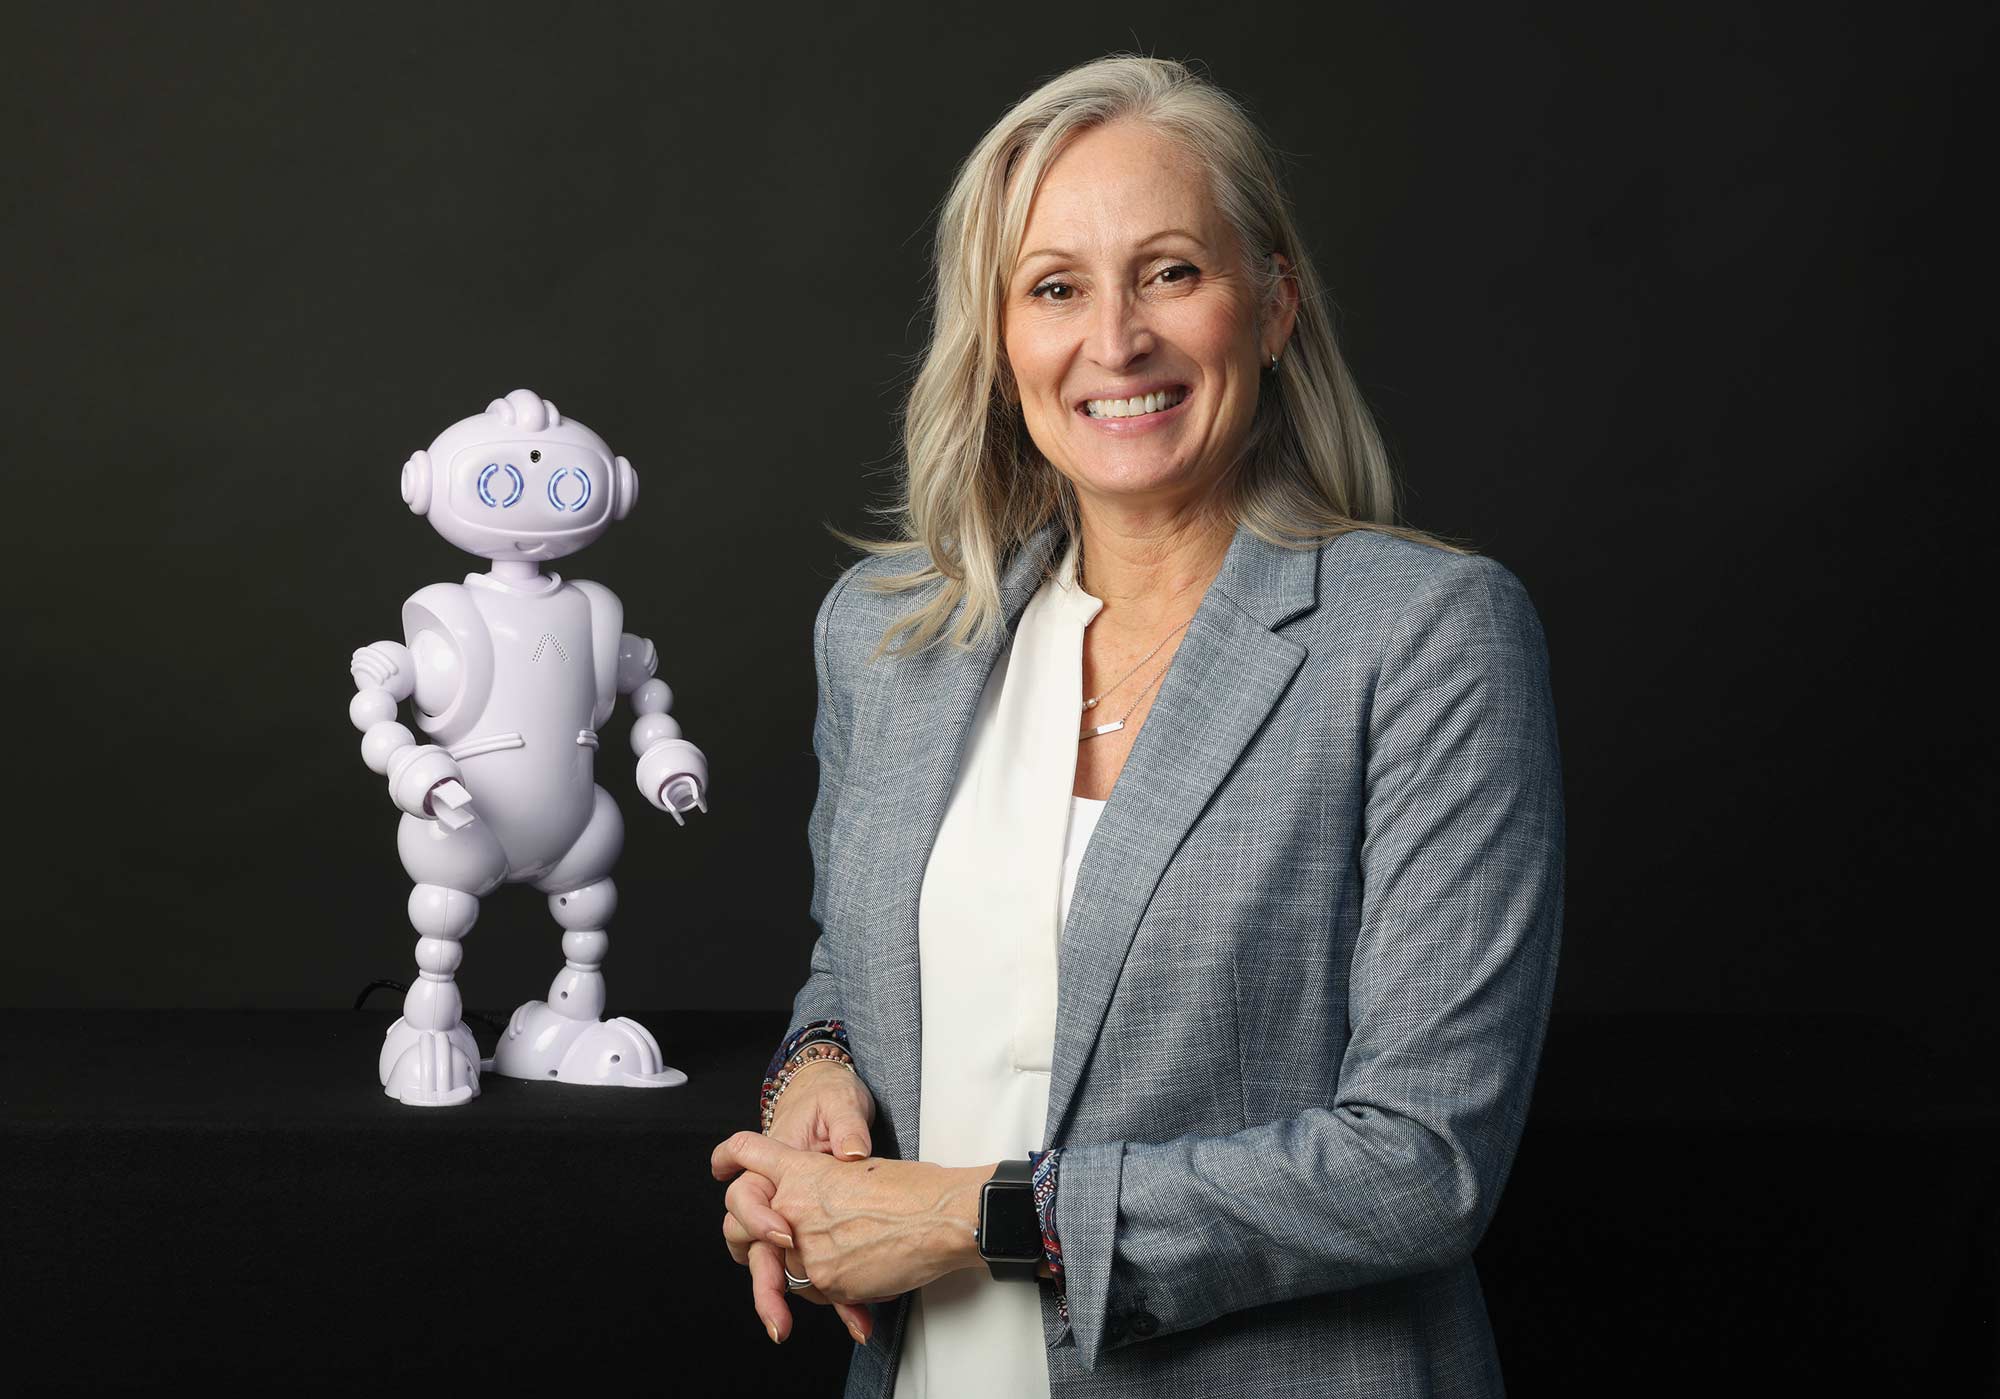 Lauren Boccanfuso fistbumps ABii the educational robot.